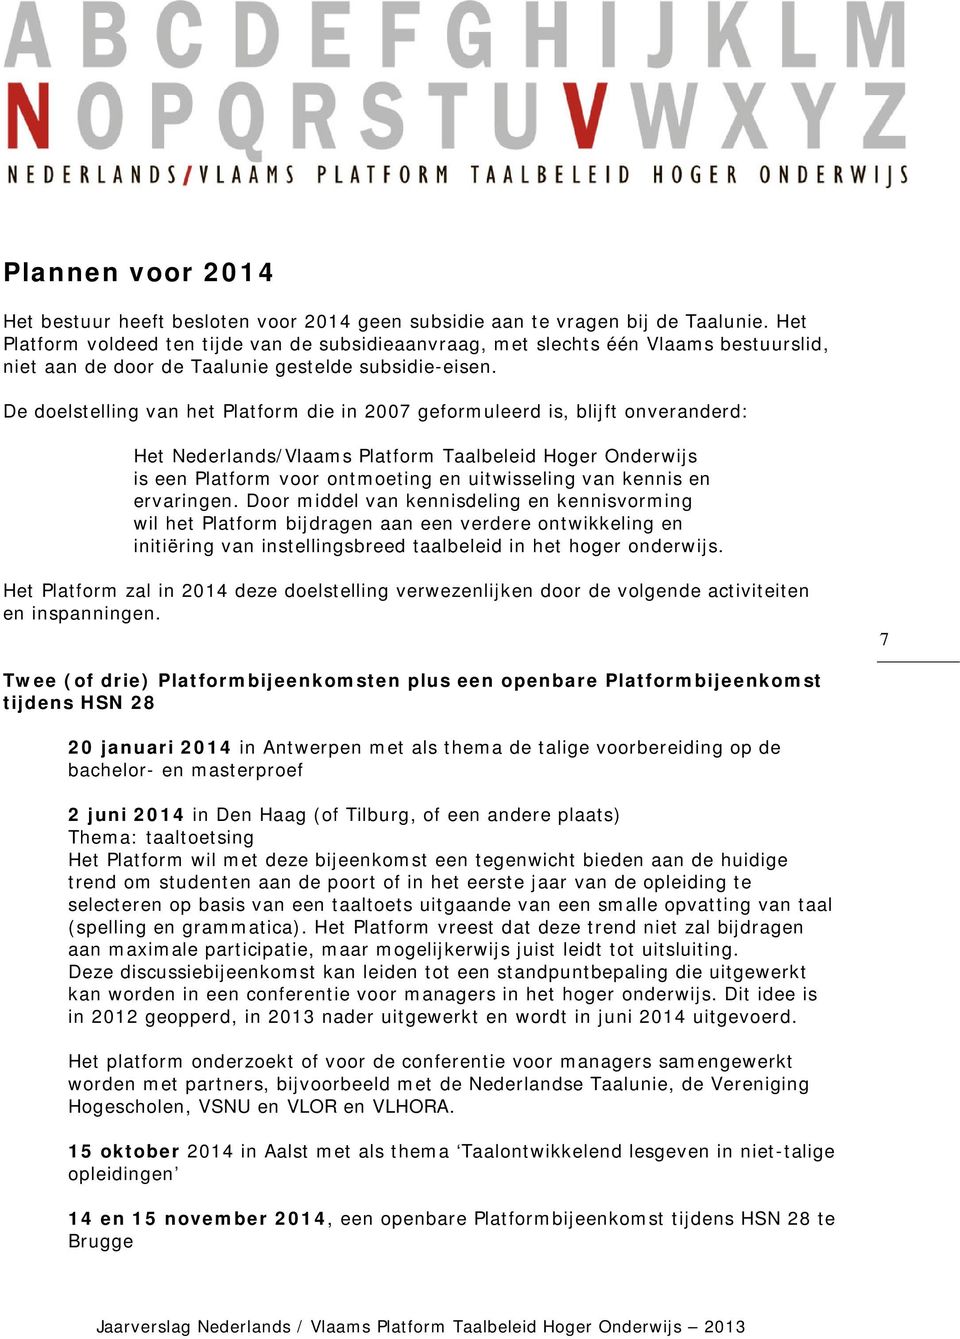 De doelstelling van het Platform die in 2007 geformuleerd is, blijft onveranderd: Het Nederlands/Vlaams Platform Taalbeleid Hoger Onderwijs is een Platform voor ontmoeting en uitwisseling van kennis